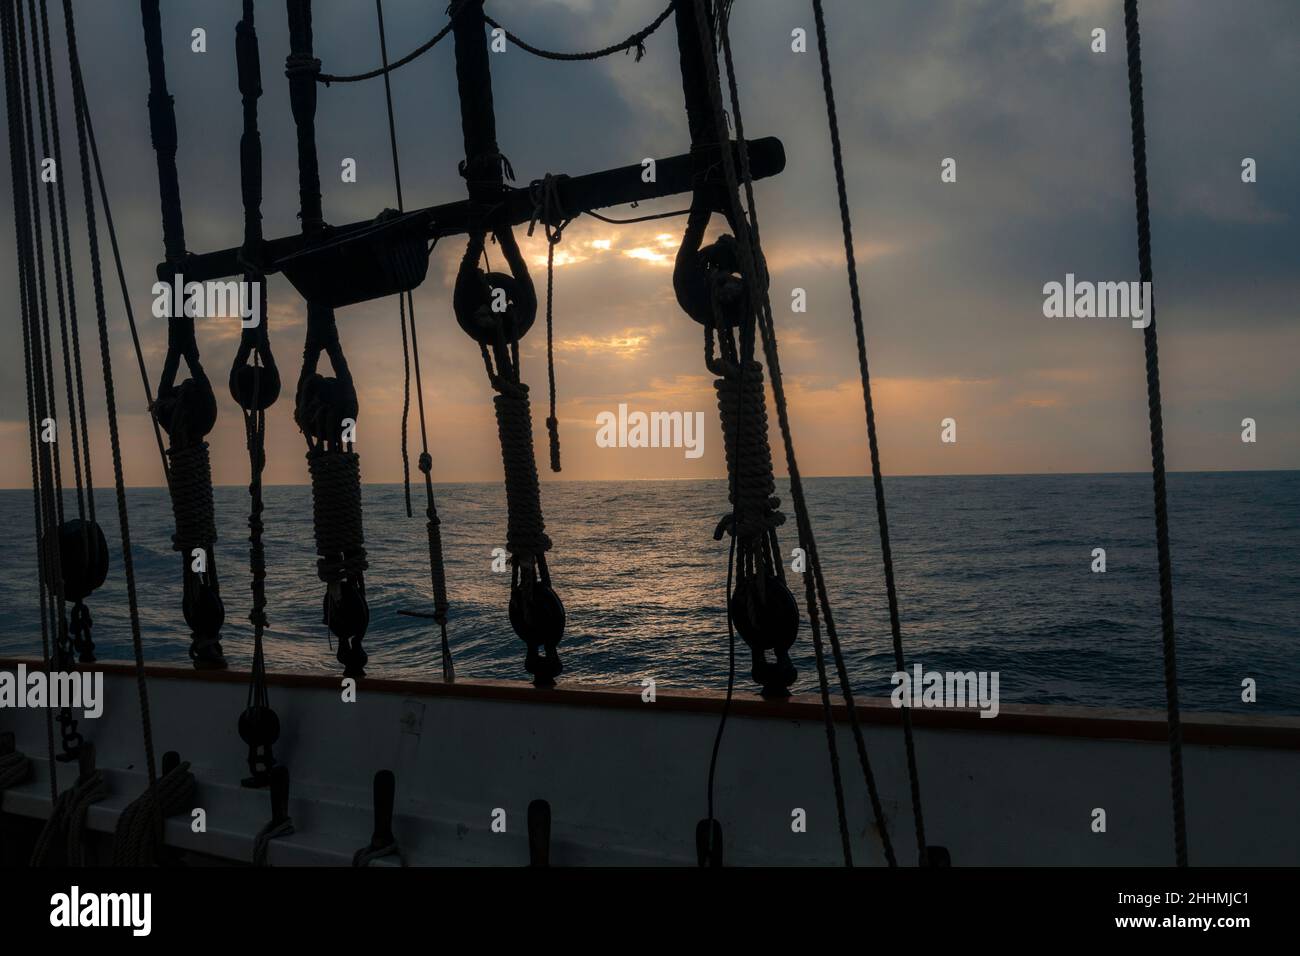 Ancient boat navigating at dawn on Mediterranean Sea. Stock Photo